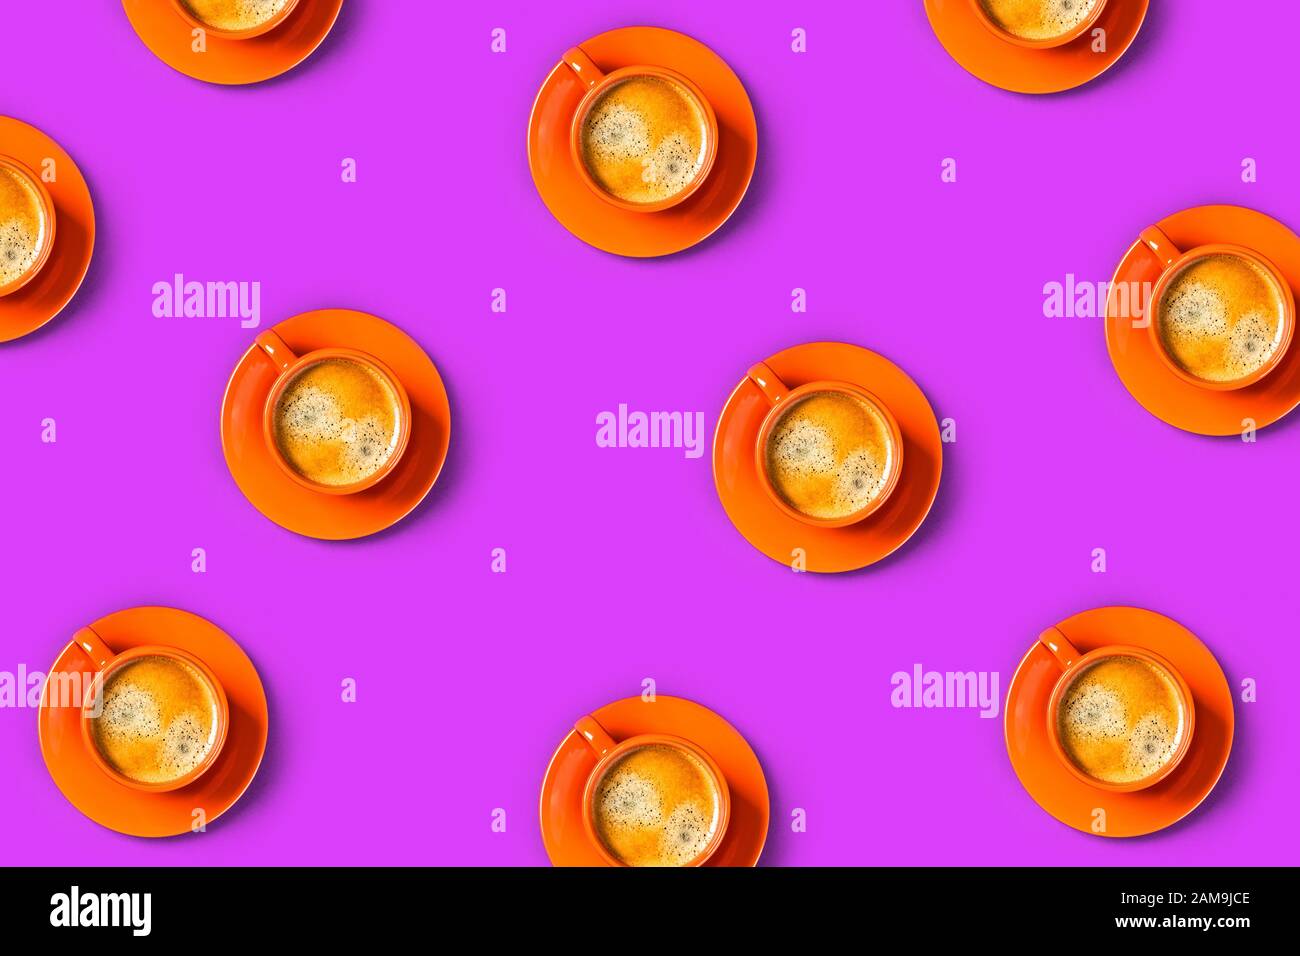 Motif avec fond violet et tasses orange de café savoureux. Couche plate, vue supérieure, espace de copie. Banque D'Images